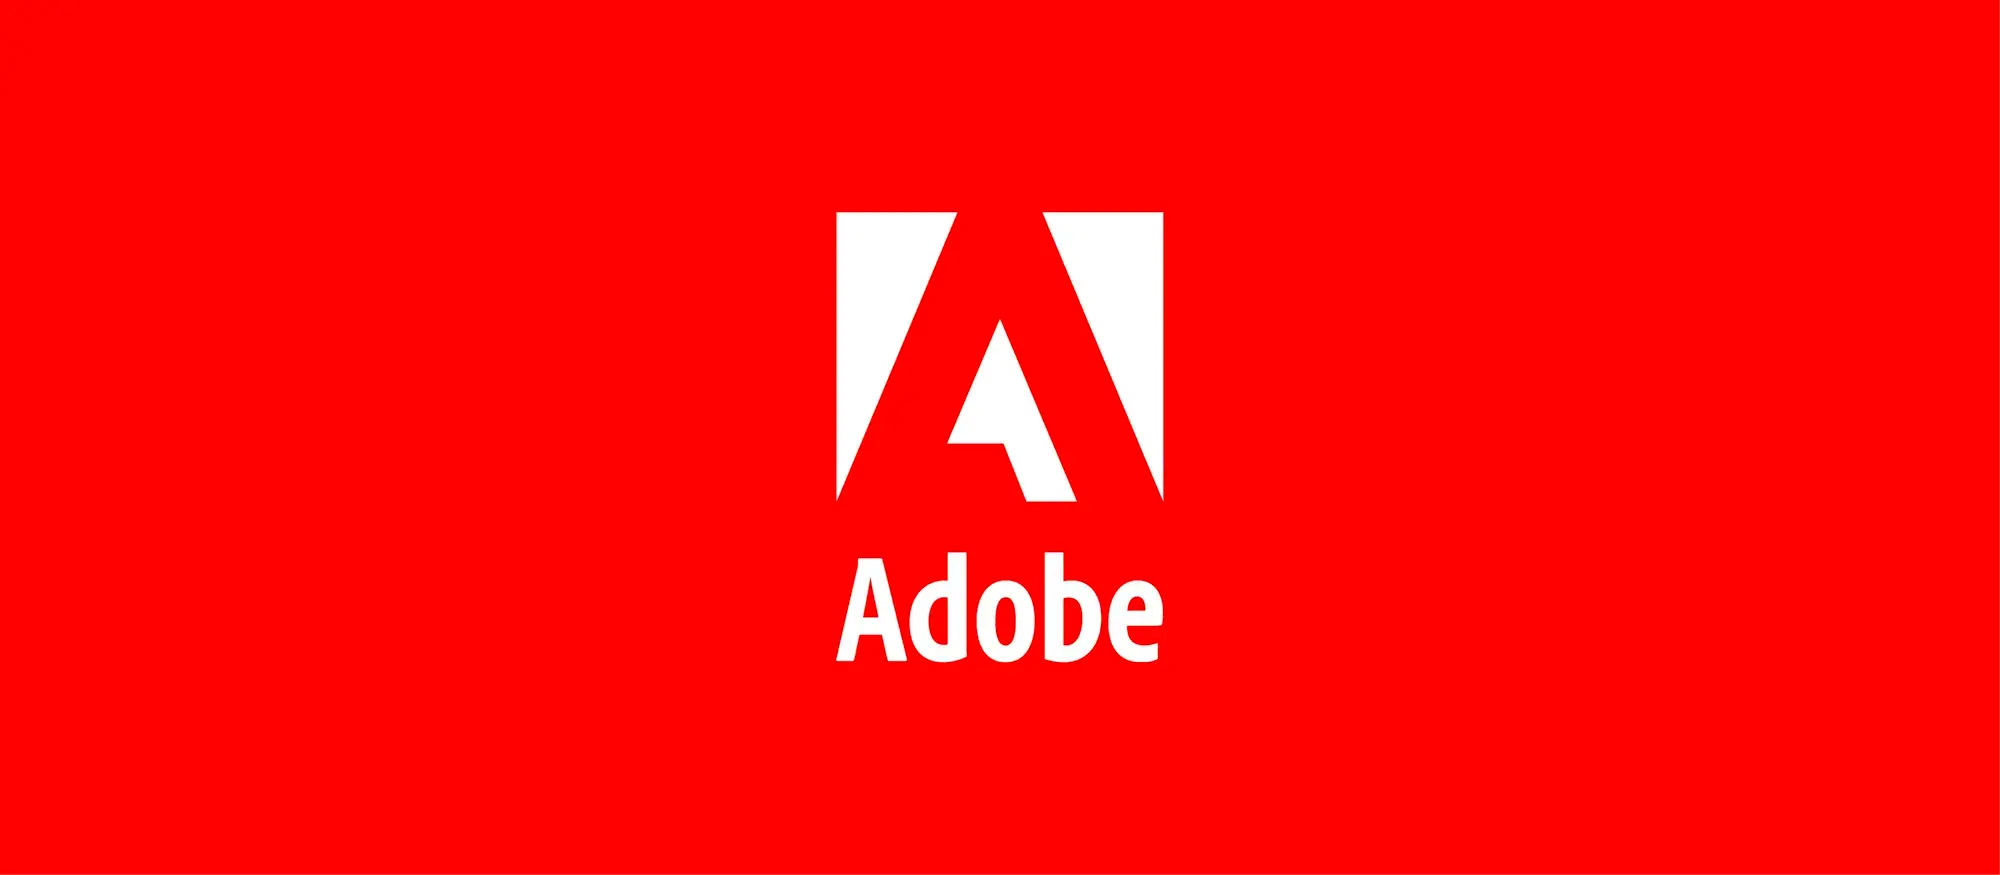 Adobe utilise l'intelligence artificielle pour séparer les pistes audio